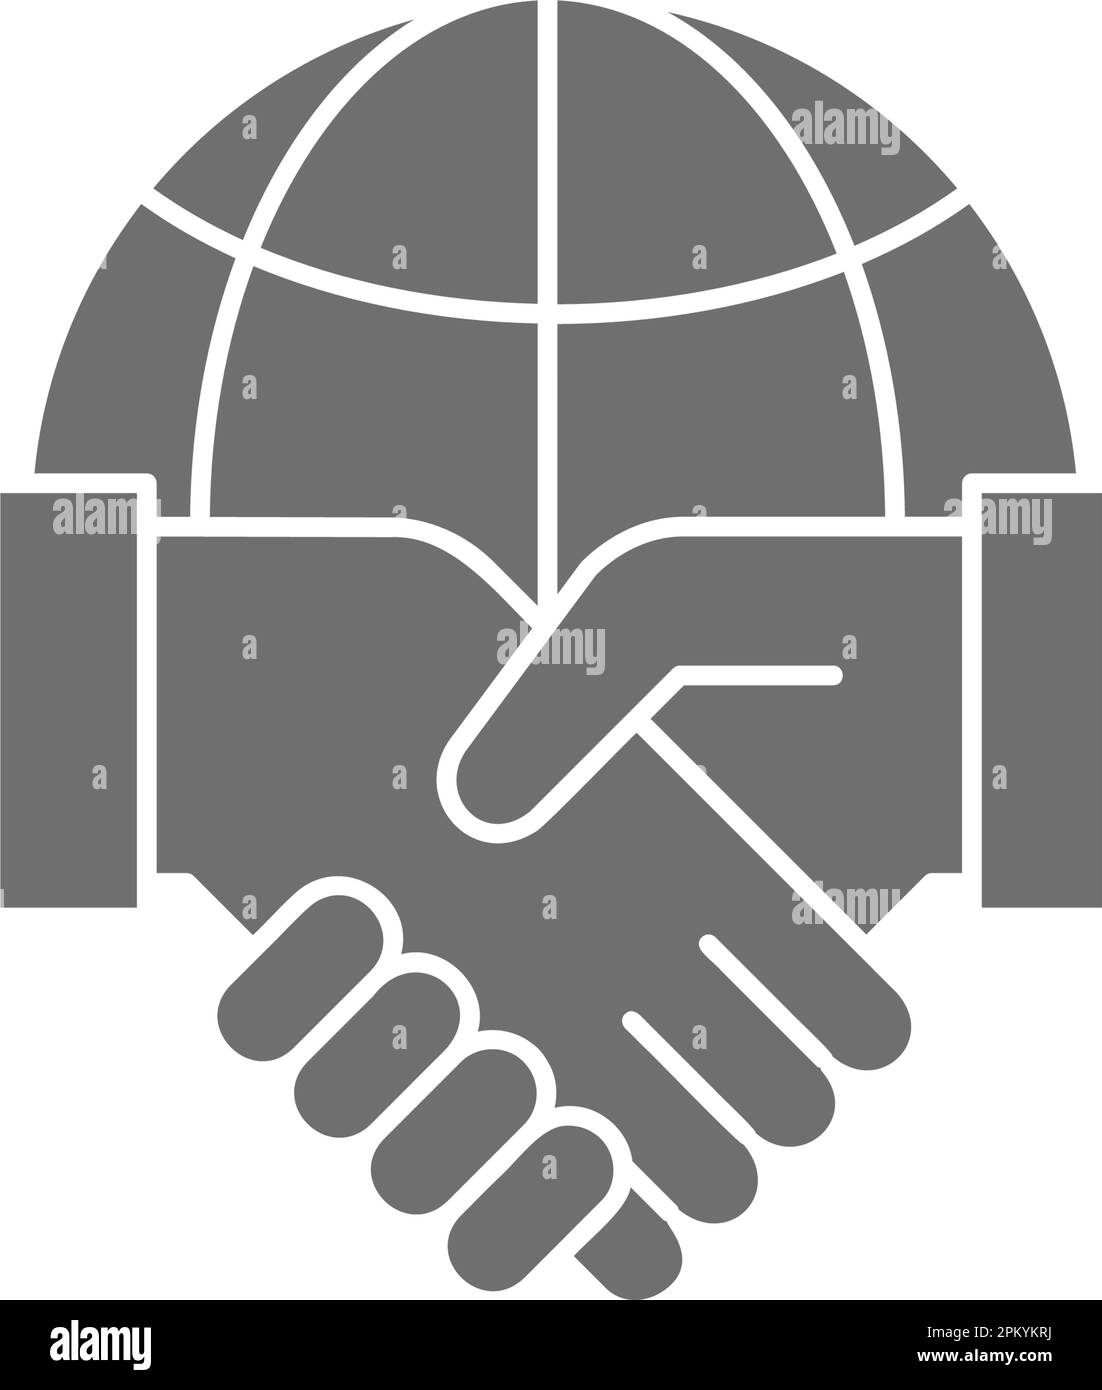 Globe terrestre avec poignée de main, partenariat mondial, accord international icône de remplissage gris. Technologie mondiale, Internet, réseau social symbole design. Illustration de Vecteur